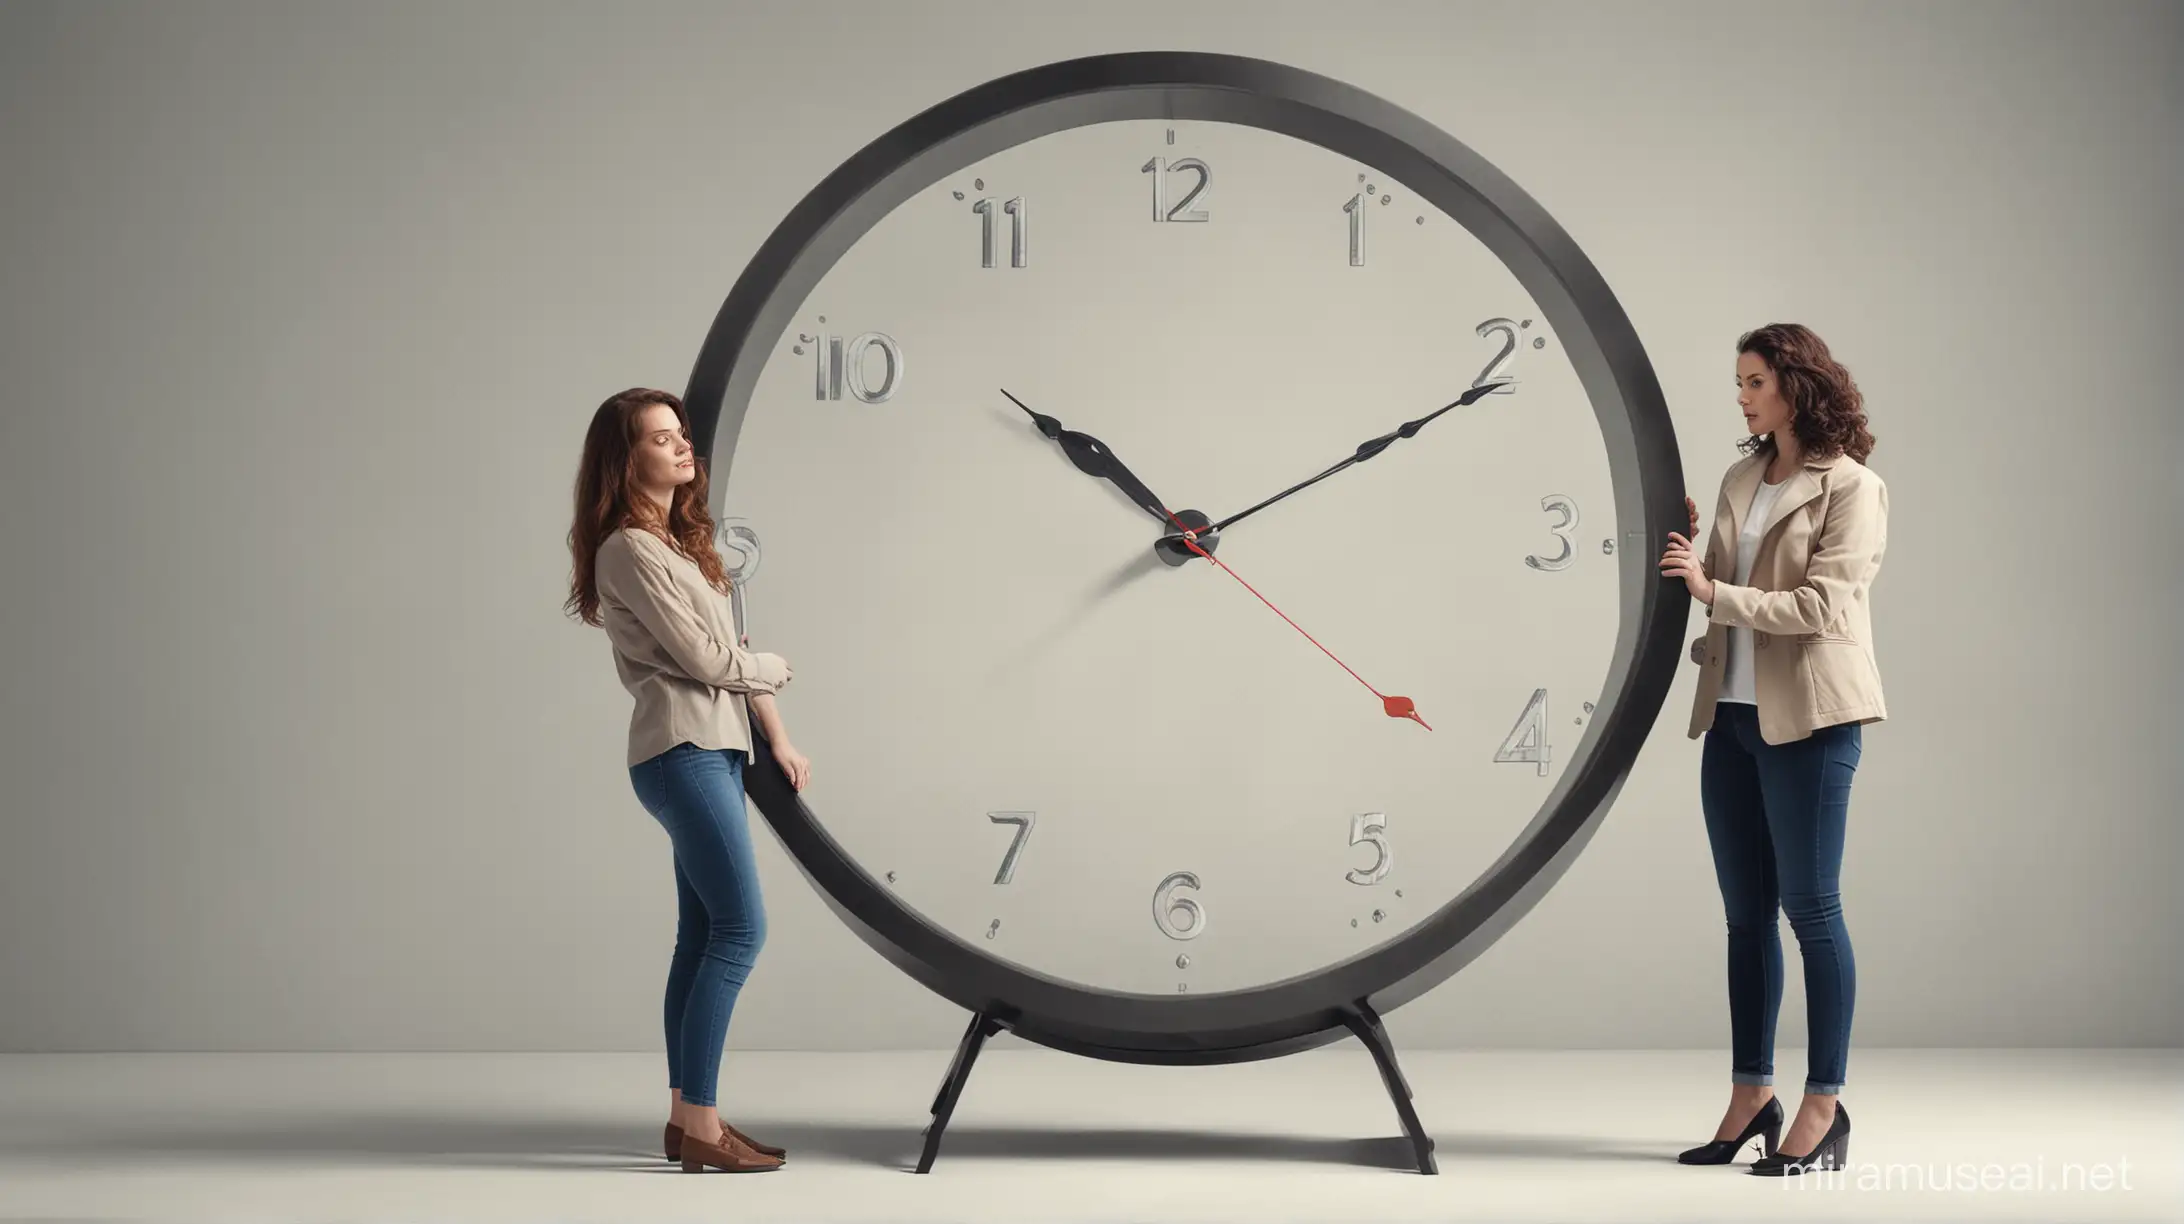 me crie uma imagem de duas mulheres e um relógio no meio representando o tempo realista